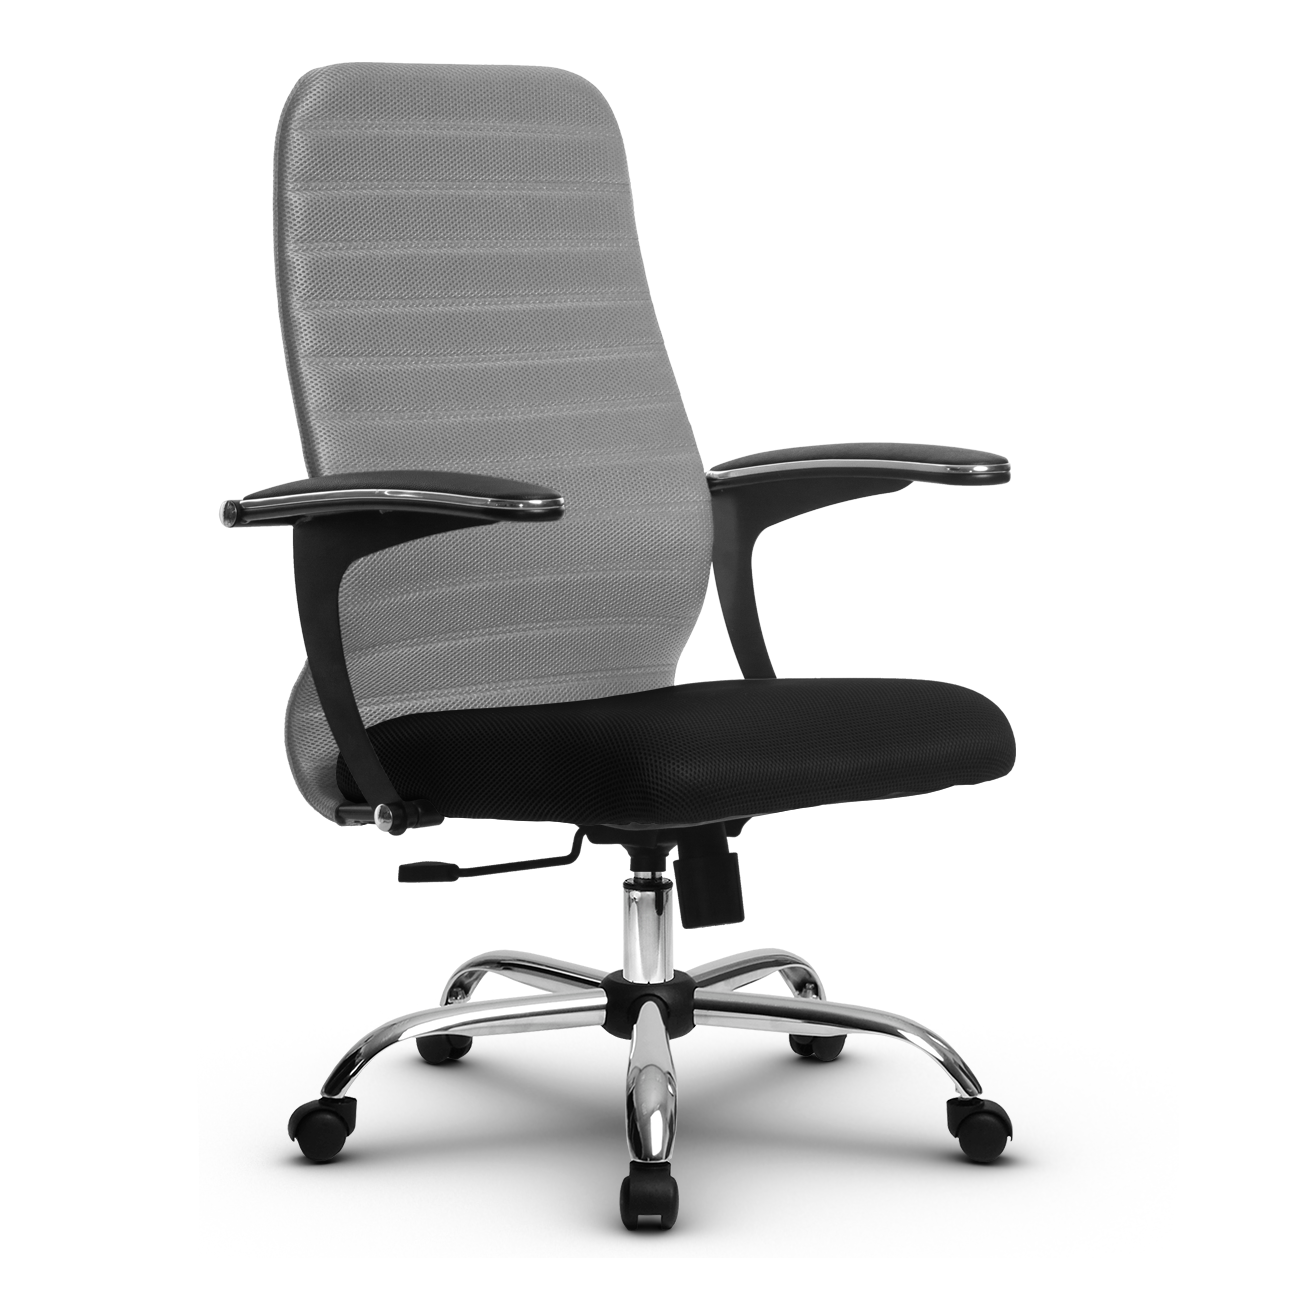 Кресло офисное метта SU-CM-10(SU-CU160-10) хроммир. пятилучие, подлокотники Бумеранг, ткань, сиденье и спинка мягкие, цвет светло-серый/черный